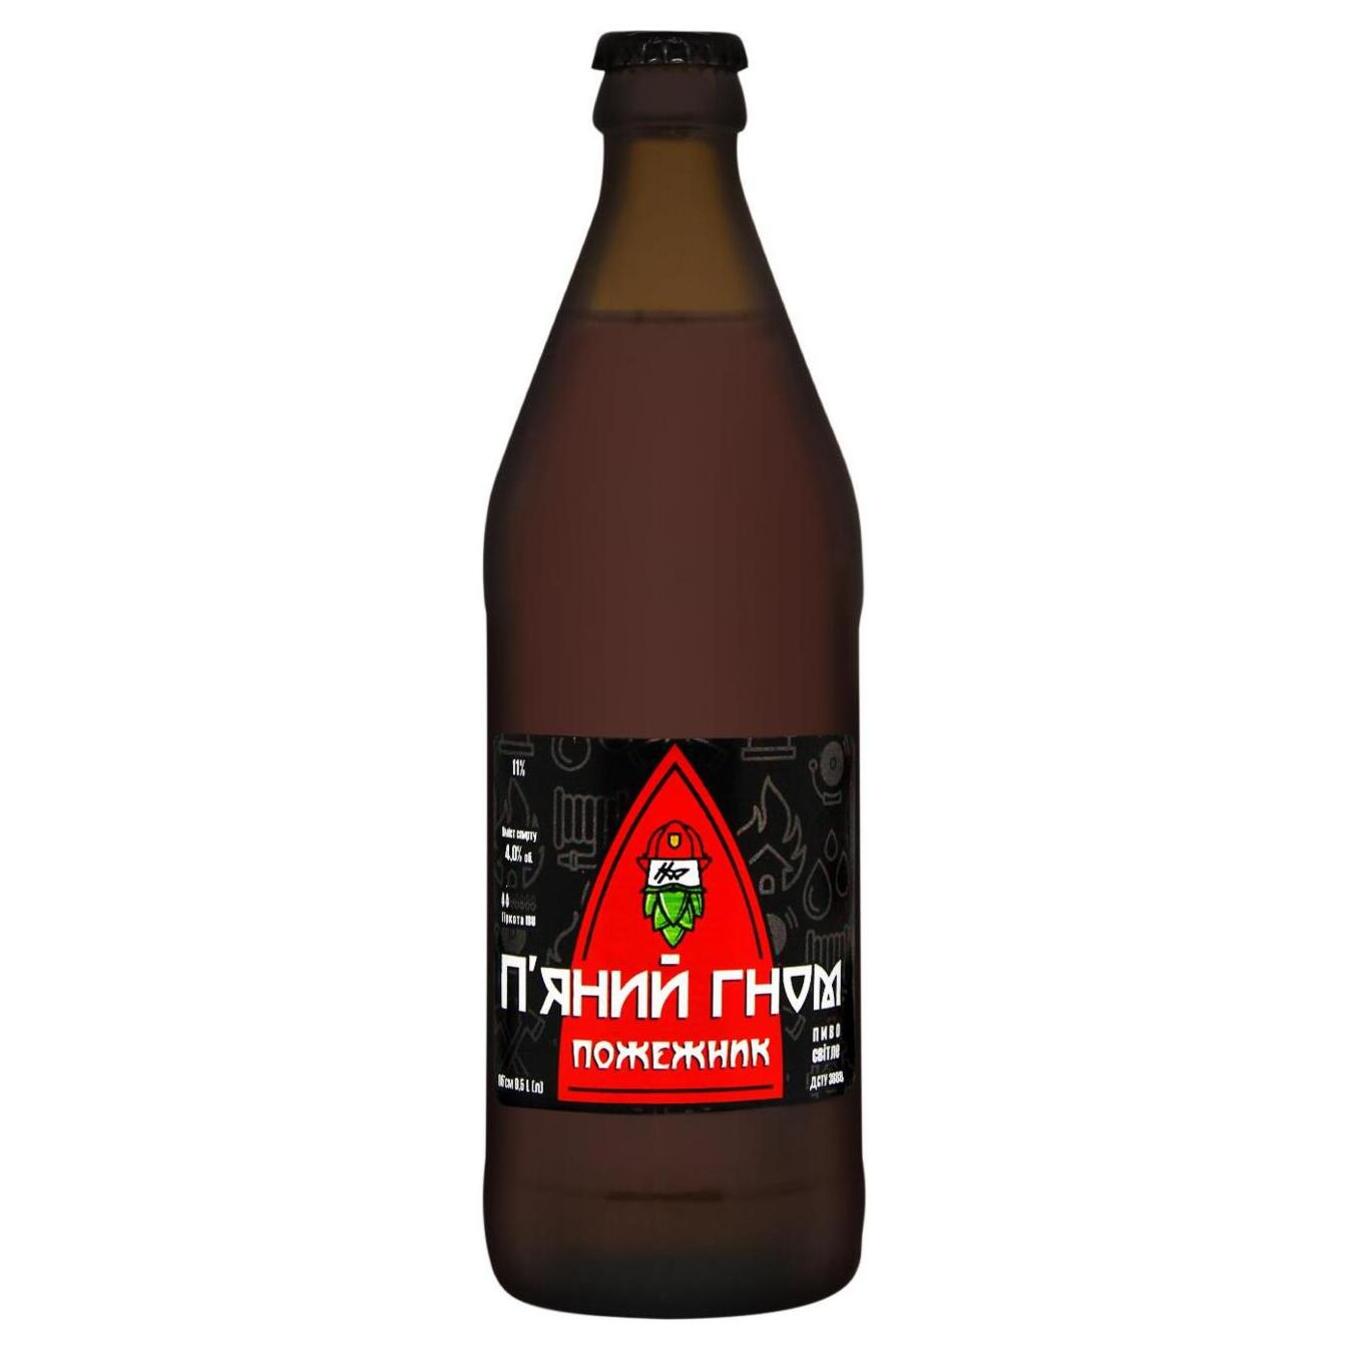 Light beer Drunk Dwarf Fireman 4% 0.5l glass